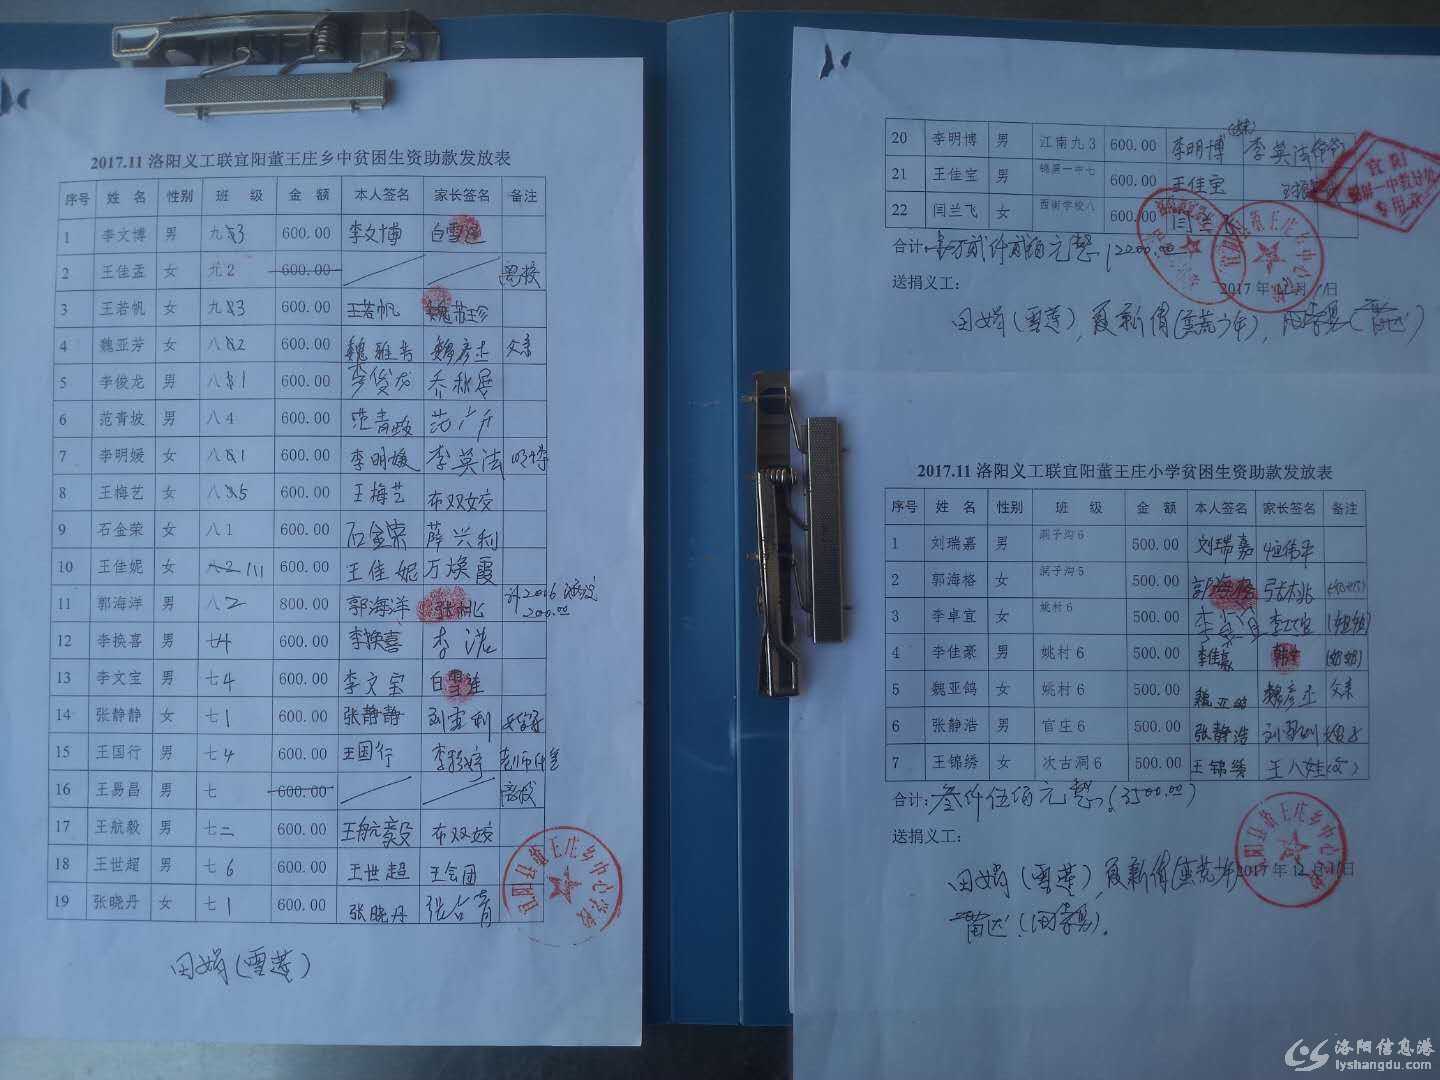 2017.12董王庄中小学资助款.jpg